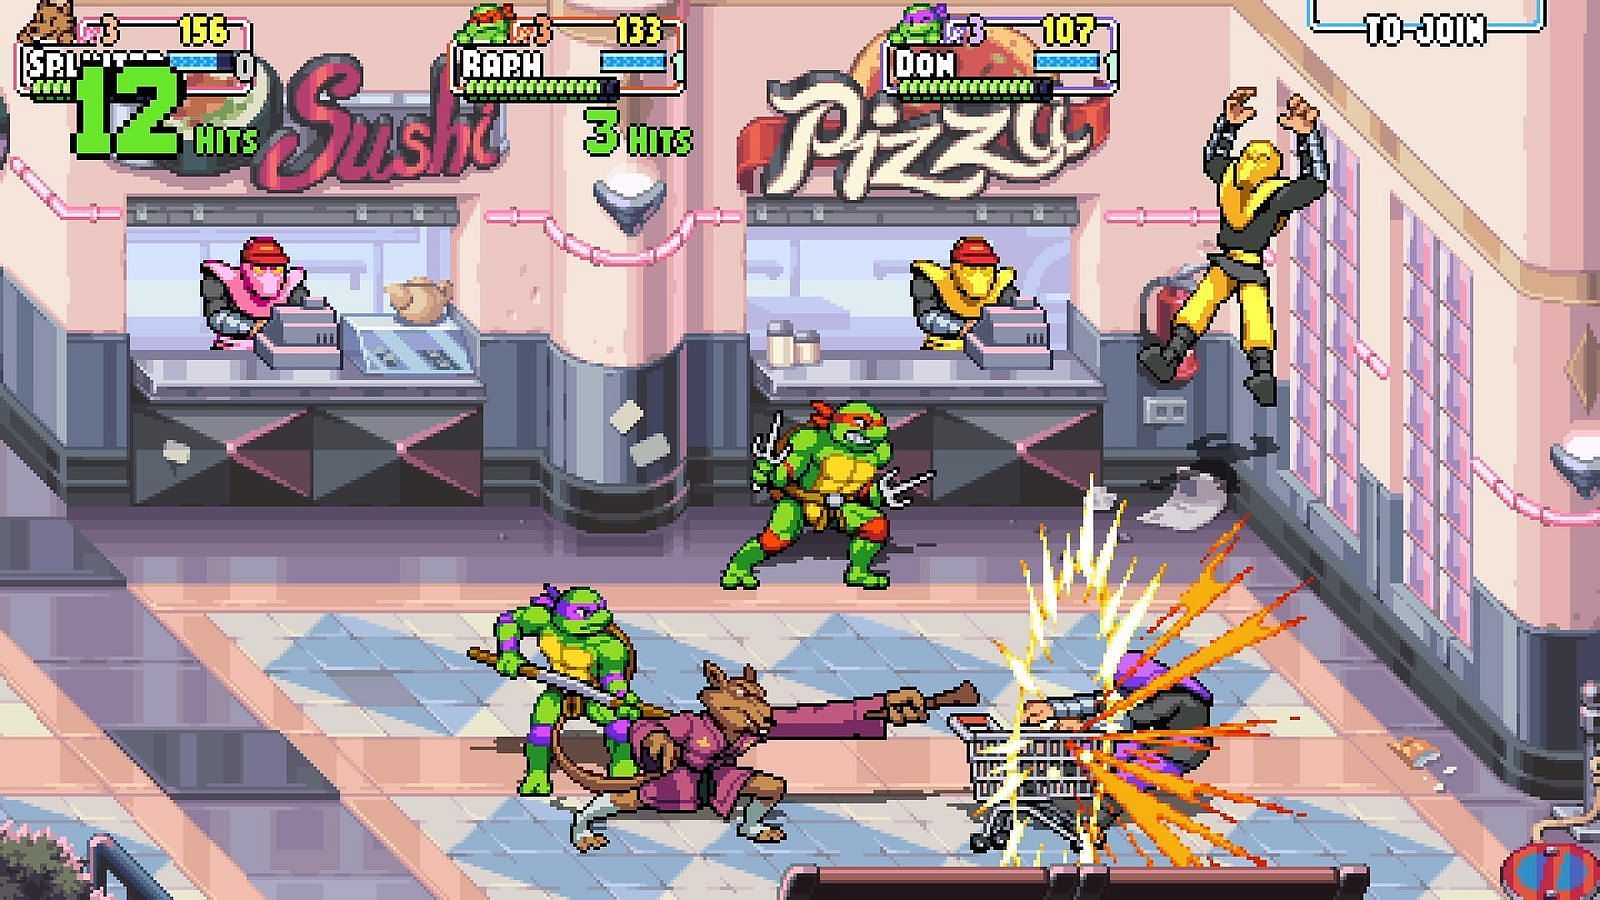 Splinter is the slowest character in this Teenage Mutant Ninja Turtles game (Image via Tribute Games)